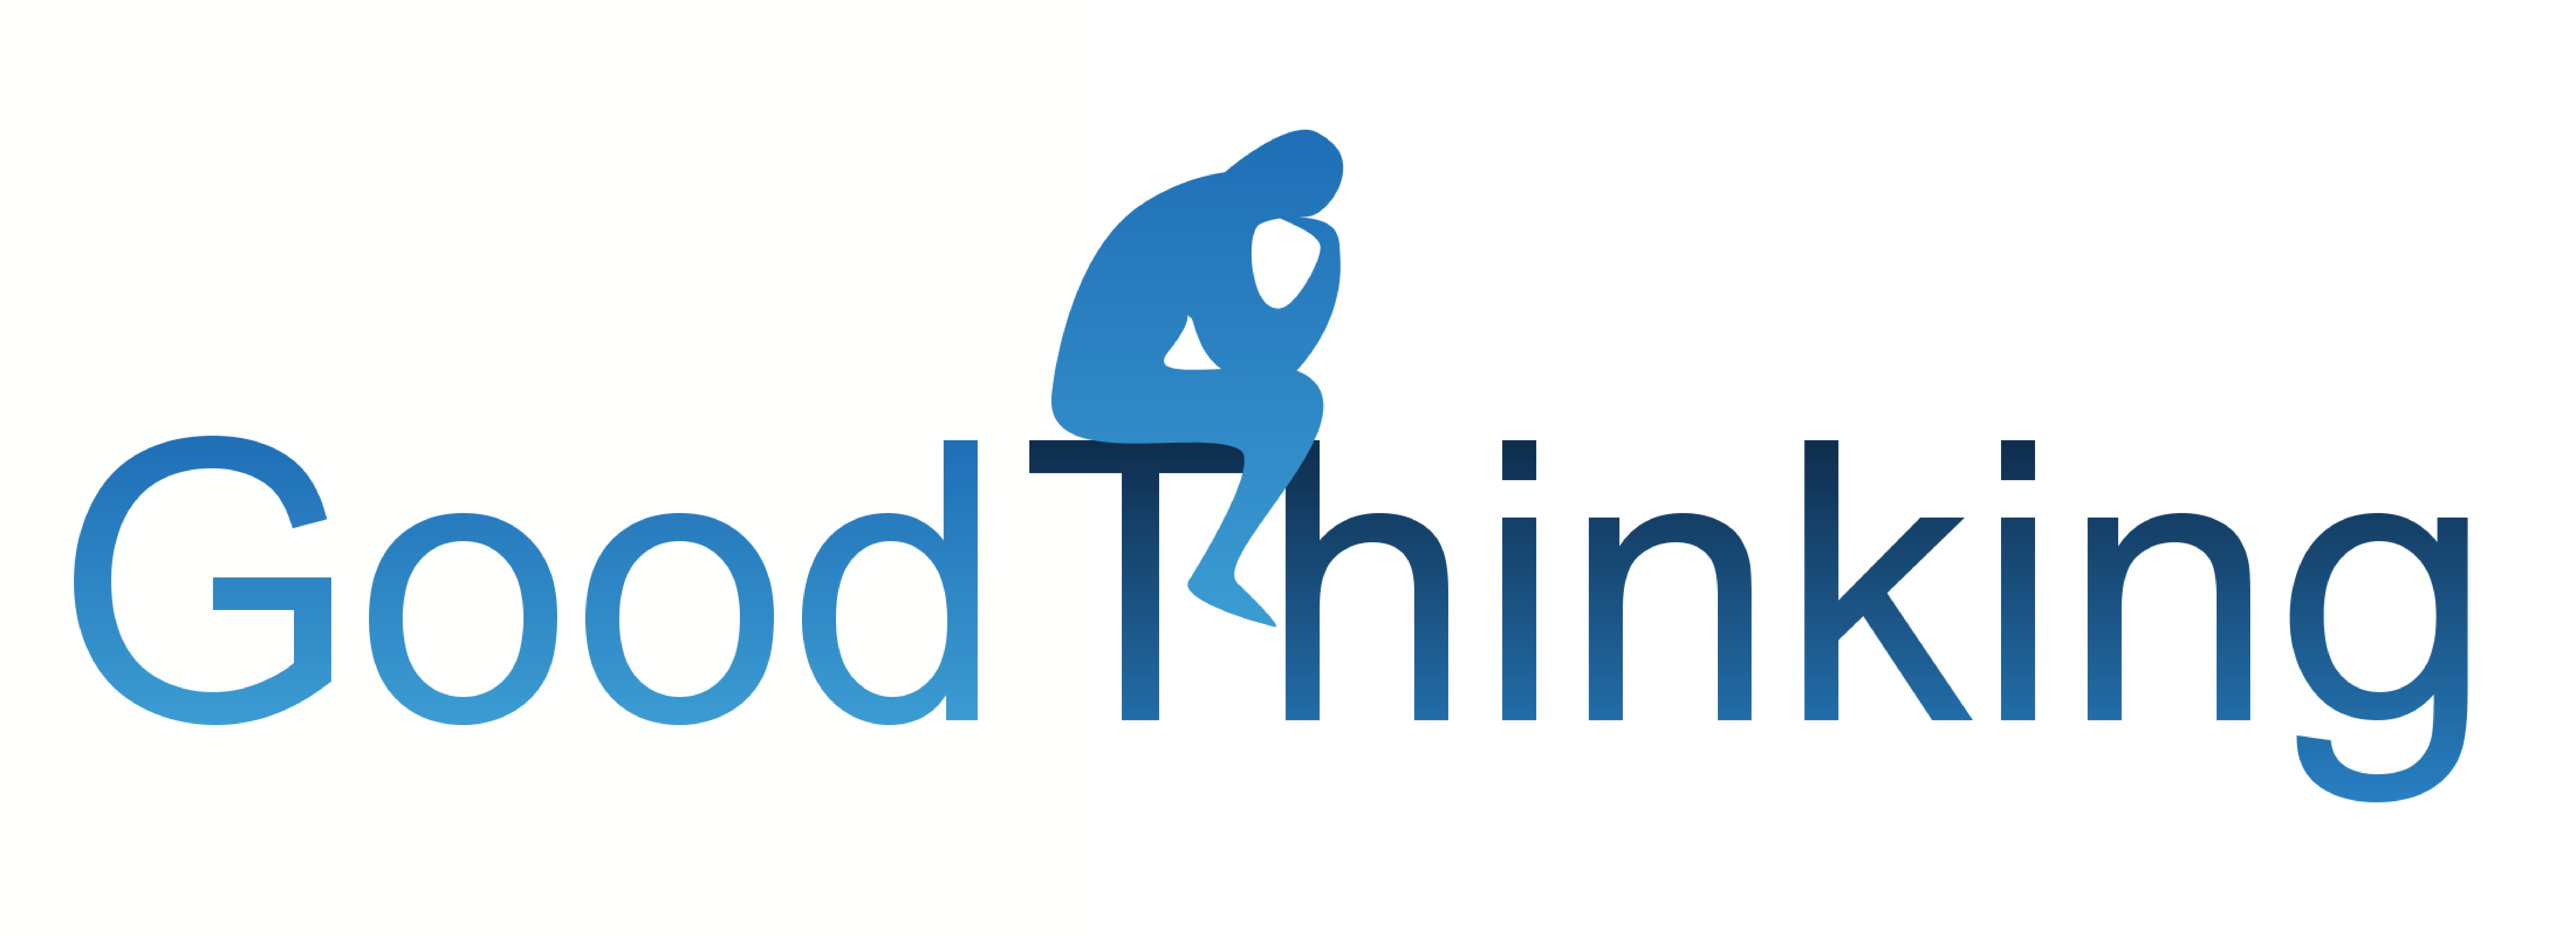 Thinking Logo - Good Thinking Society